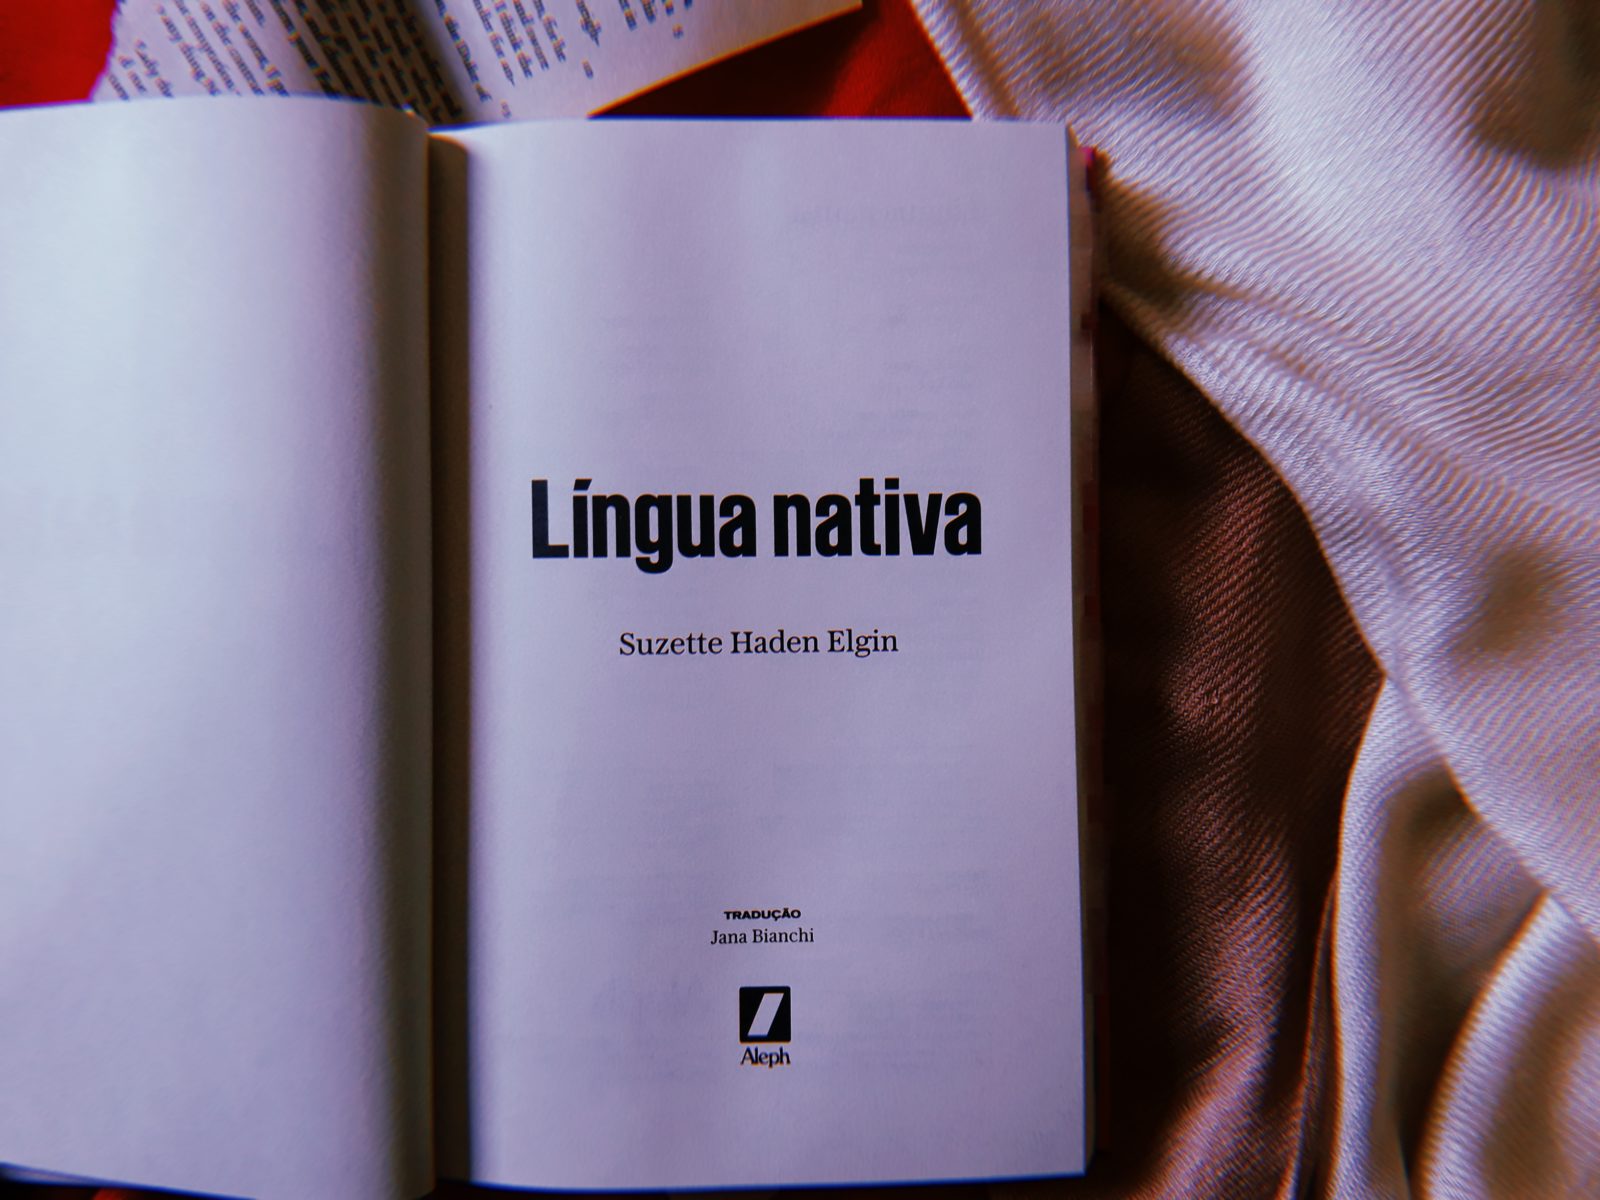 Detalhes da edição de Língua nativa, livro de Suzette Haden Elgin.